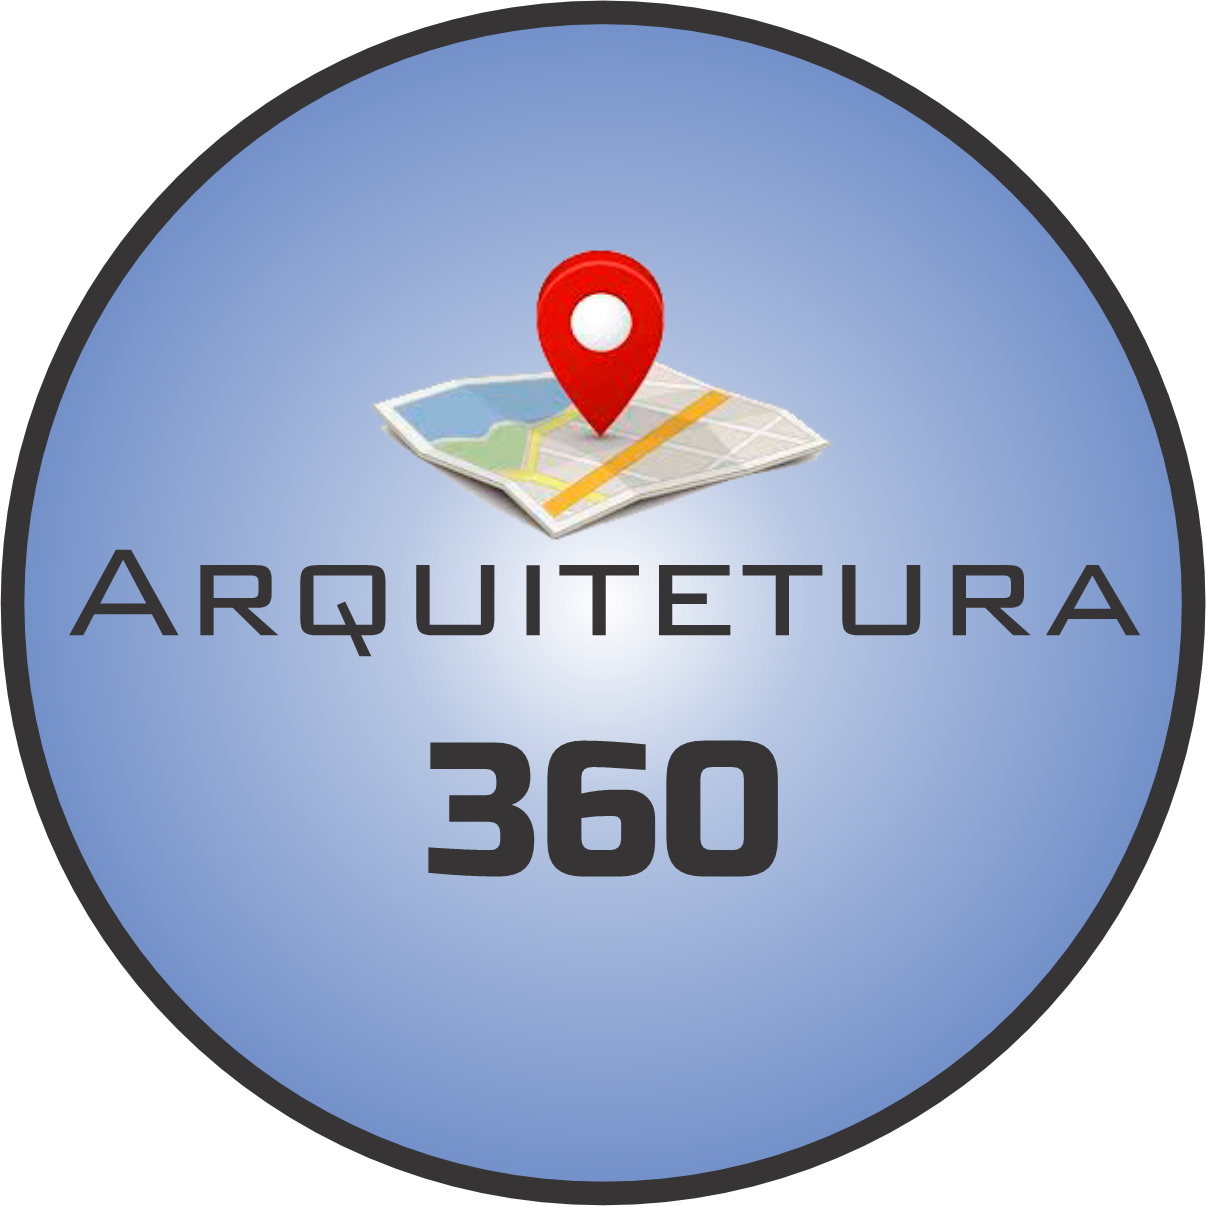 Arquitetura 360